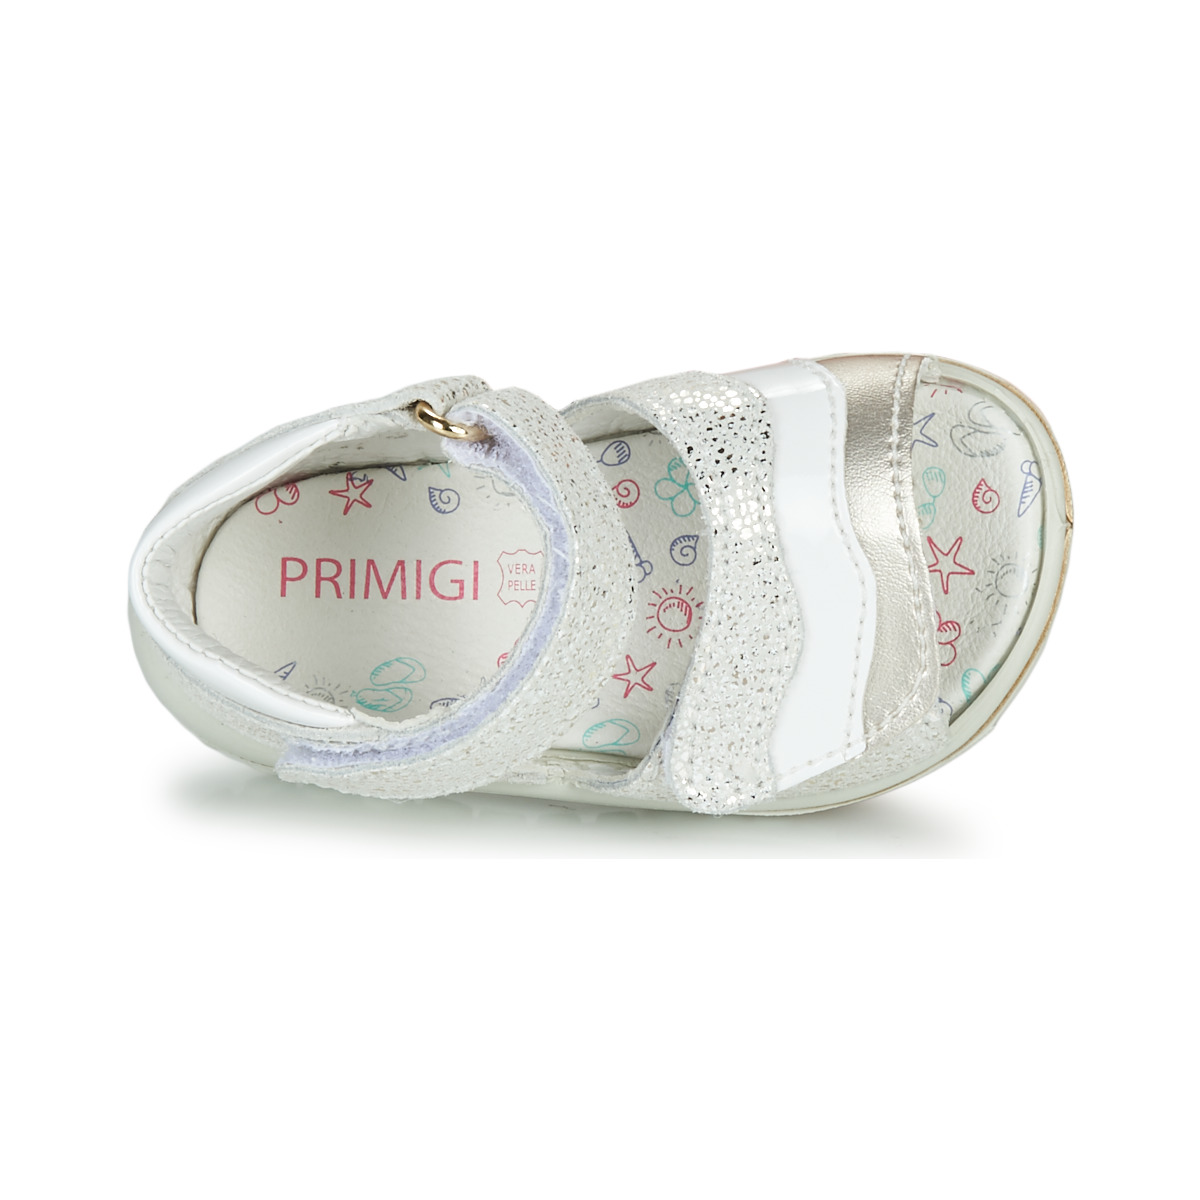 Primigi Blanc / Argenté SjgT6vwD